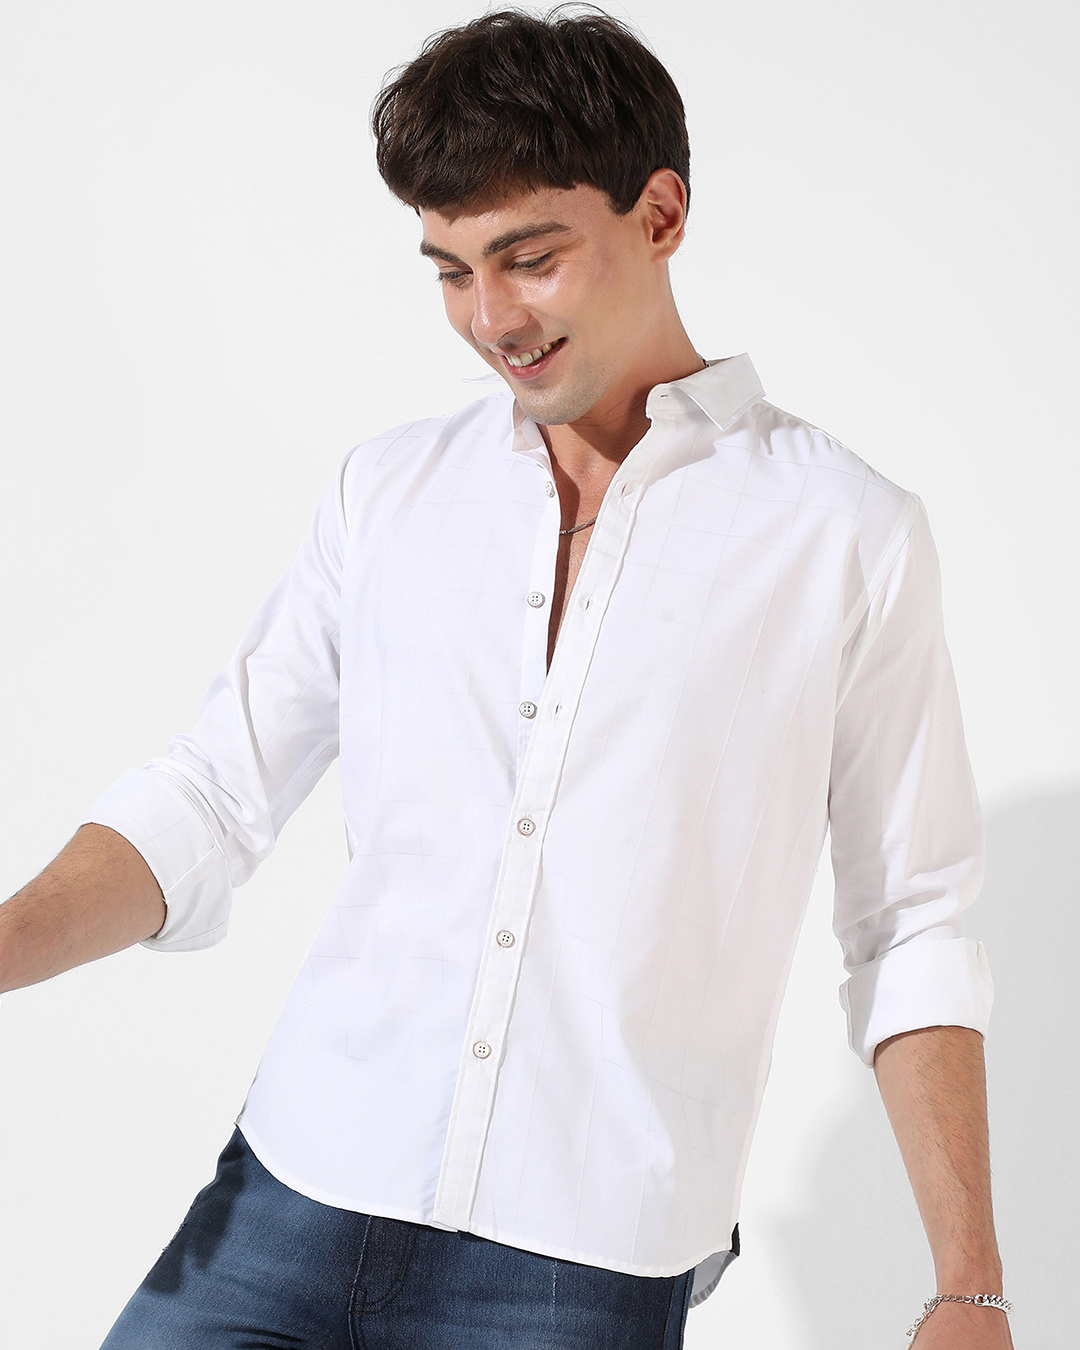 Buy Men's White Shirt Online at Bewakoof